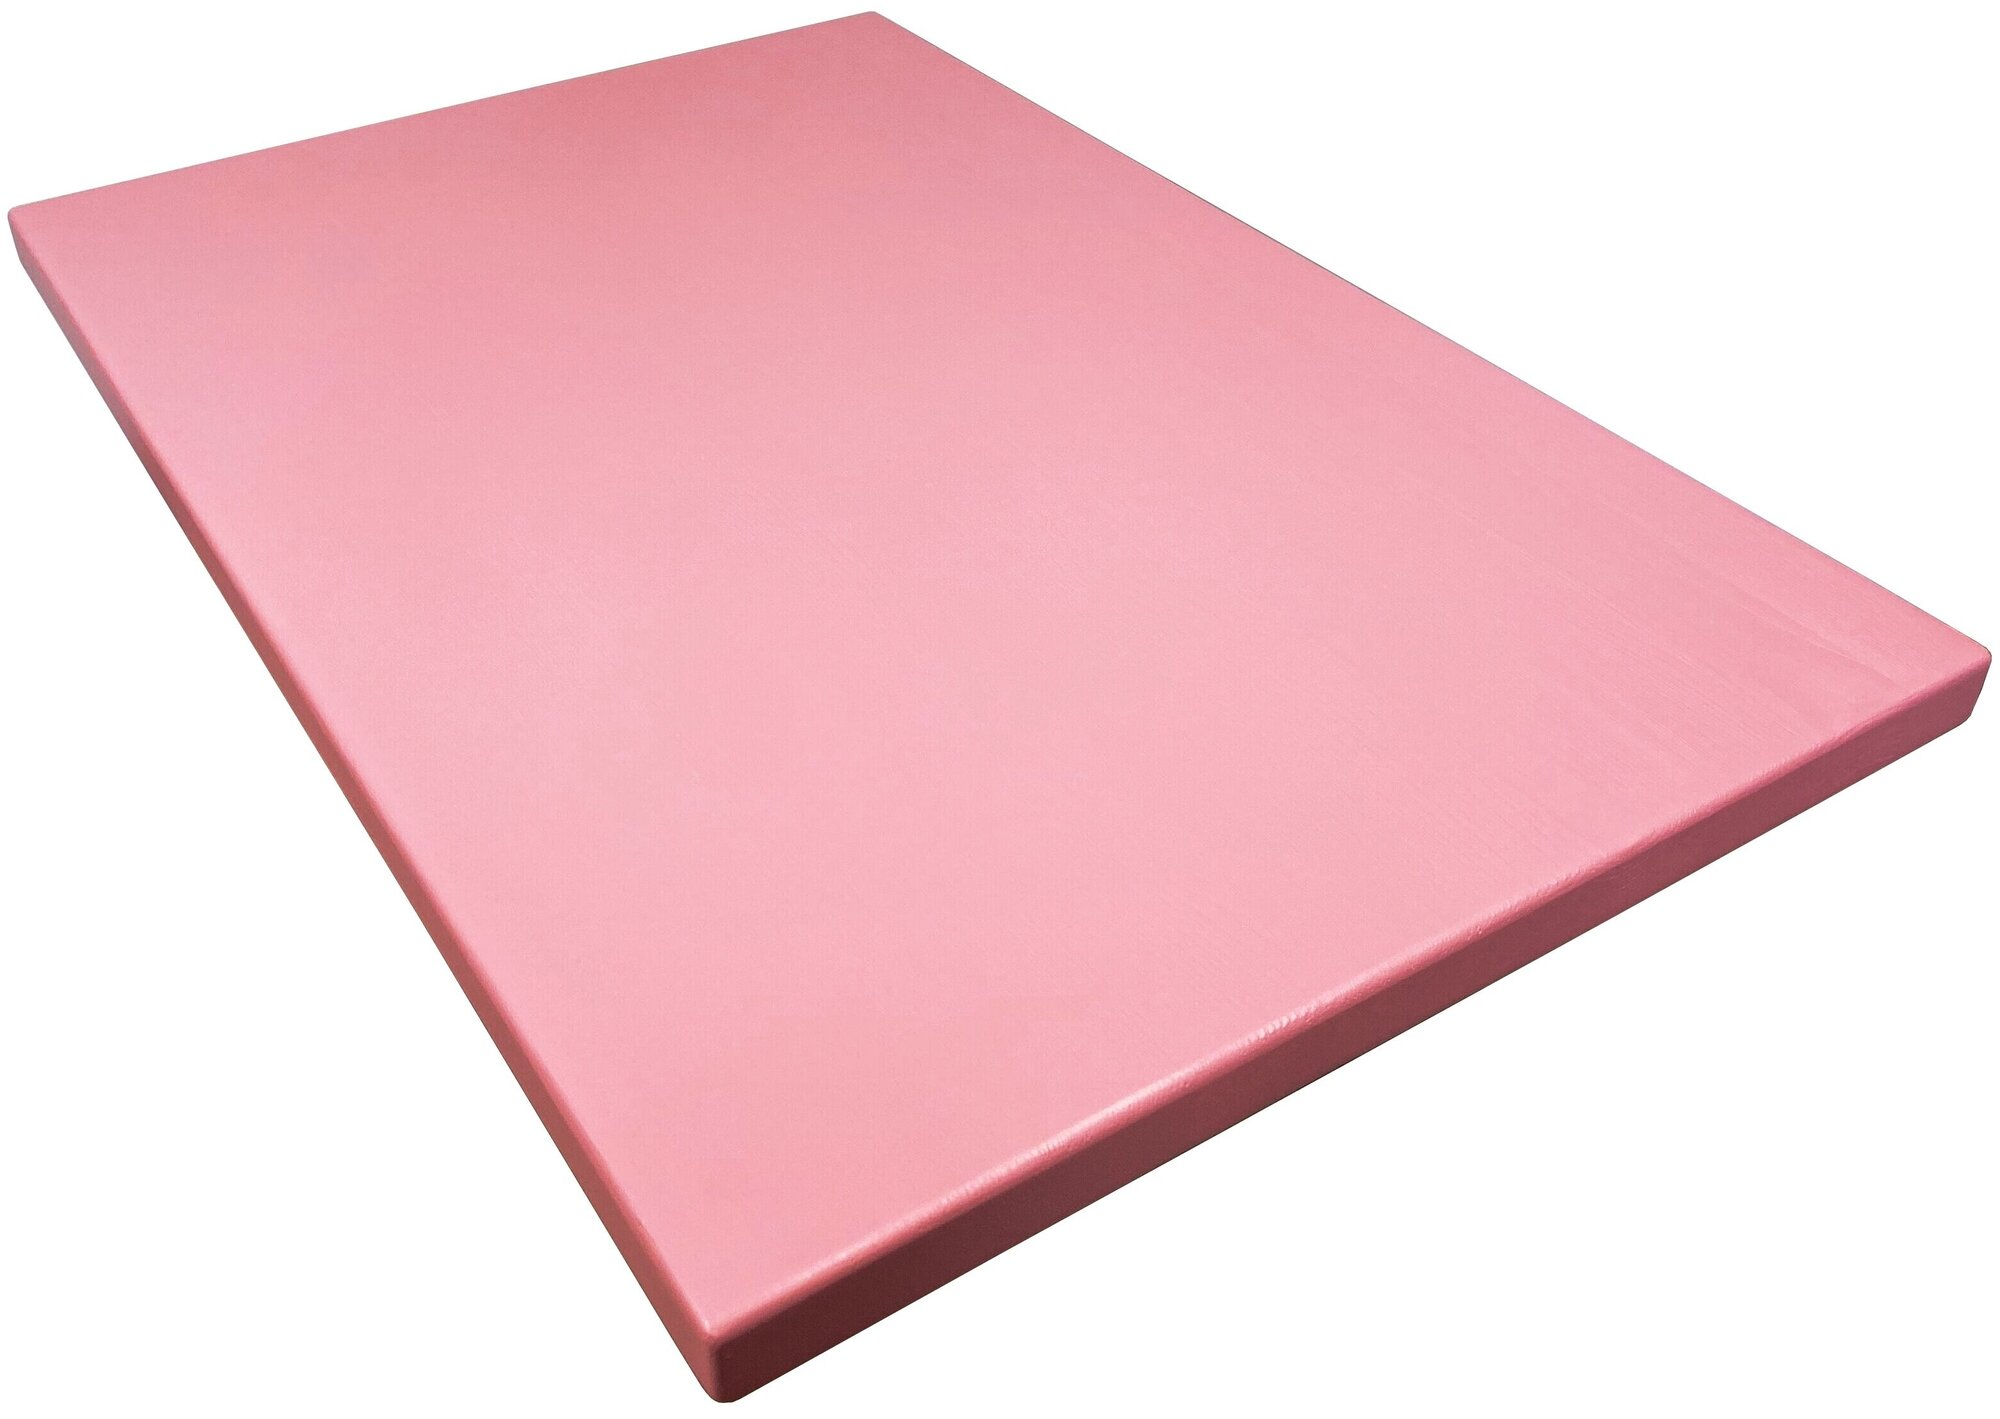 Столешница деревянная для стола, 140х60х4 см, цвет розовый